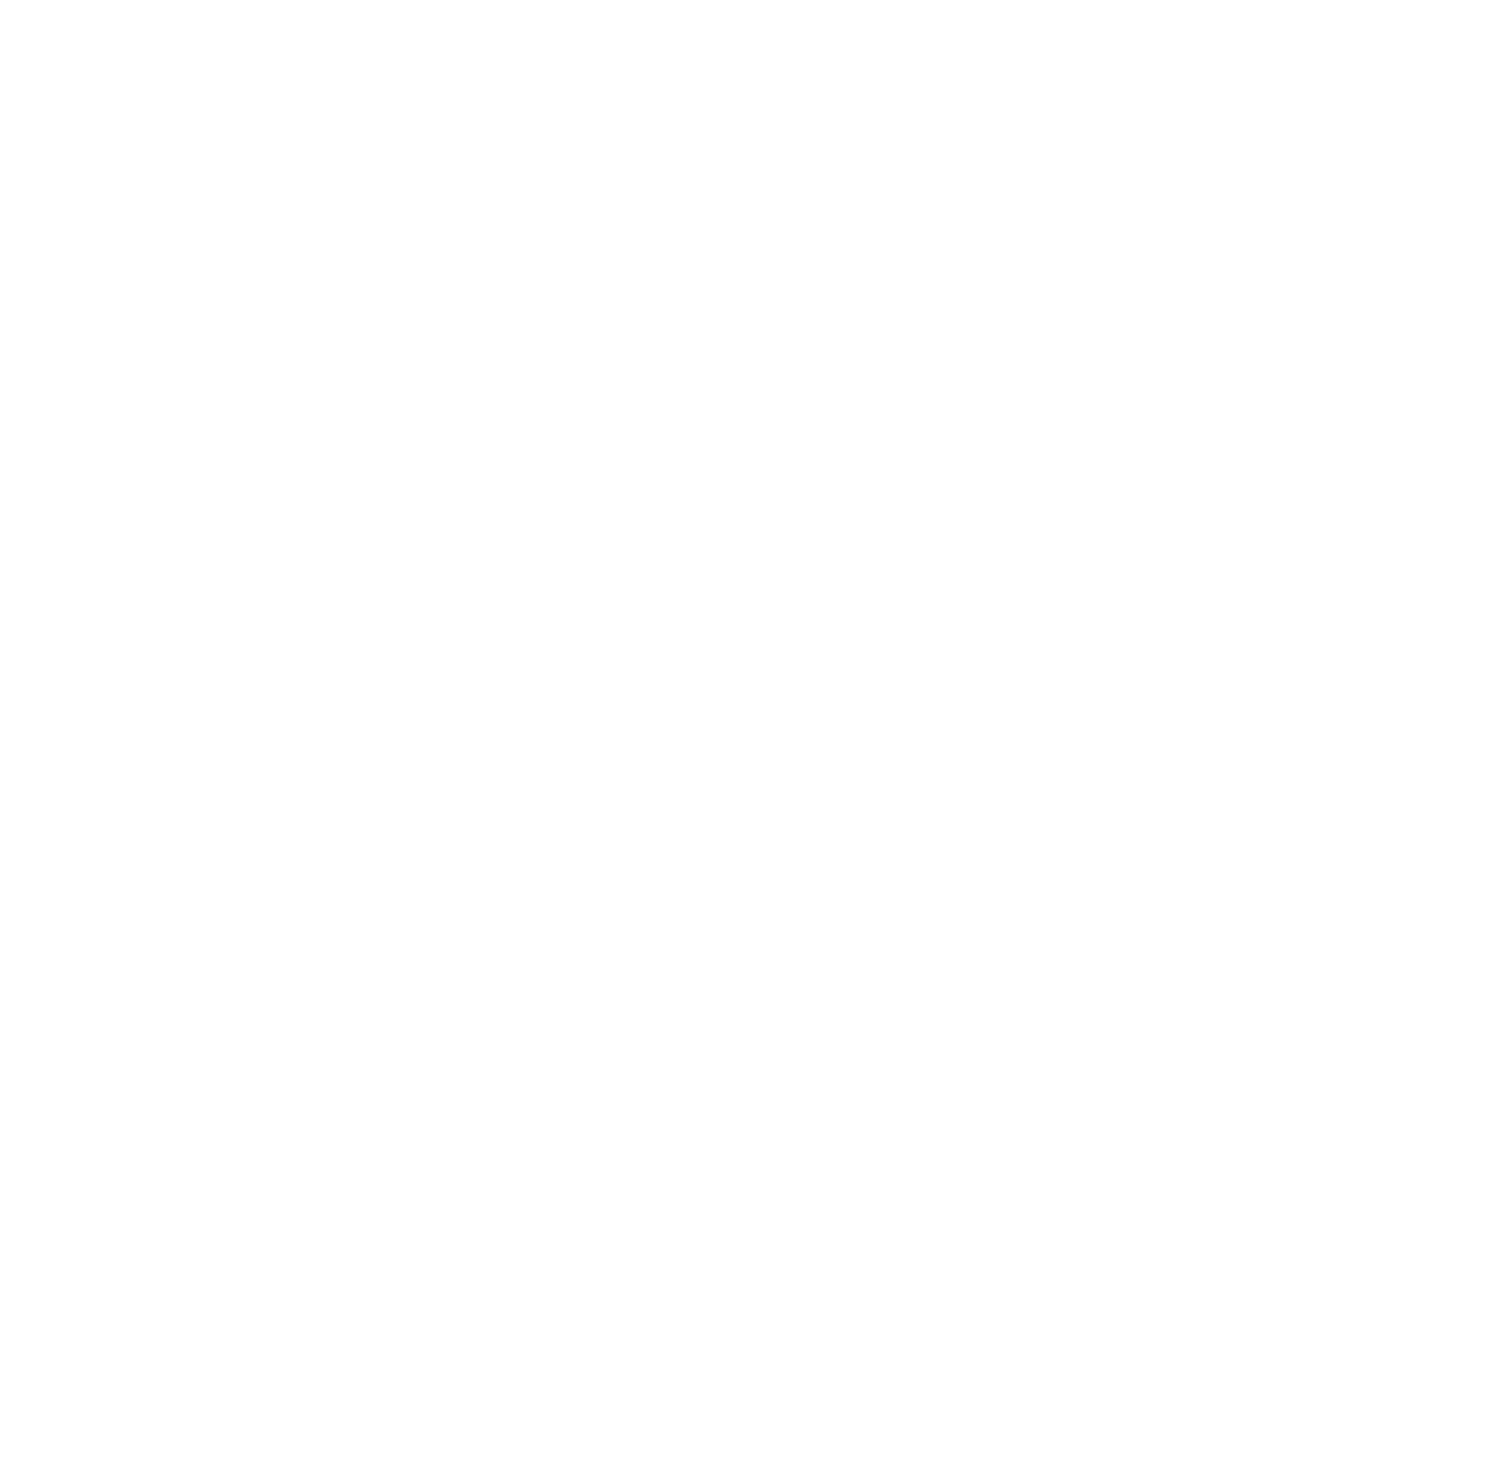 The TASTE Bakehouse